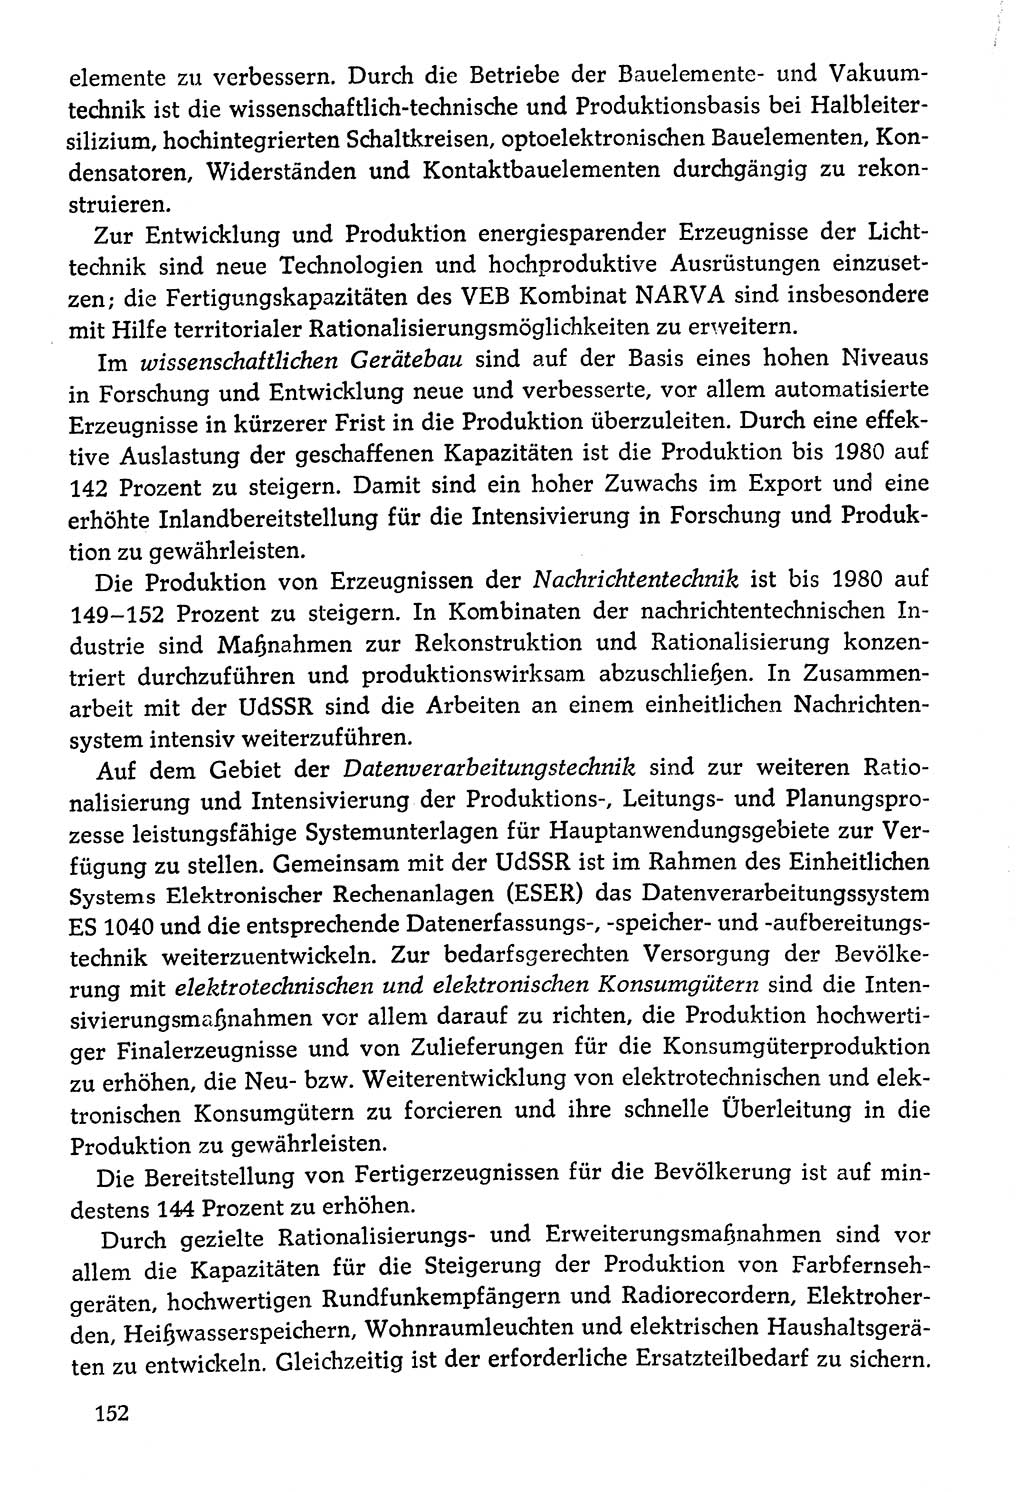 Dokumente der Sozialistischen Einheitspartei Deutschlands (SED) [Deutsche Demokratische Republik (DDR)] 1976-1977, Seite 152 (Dok. SED DDR 1976-1977, S. 152)